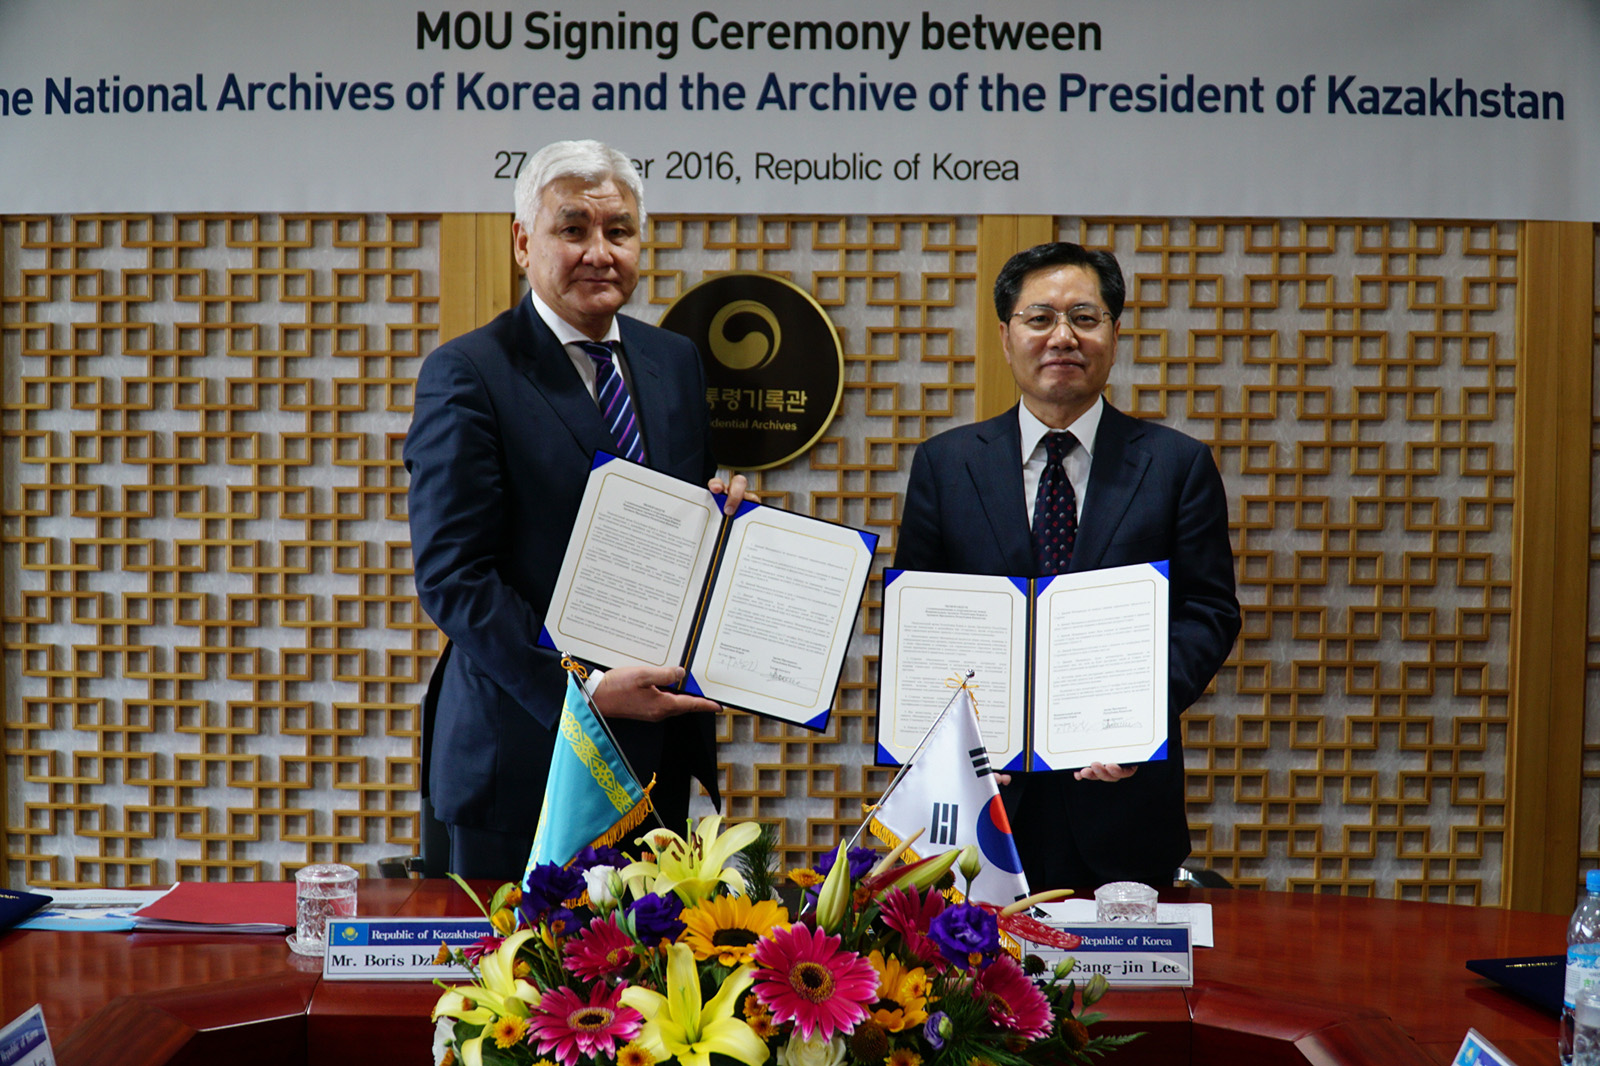 카자흐스탄과 양해각서(MOU) 체결